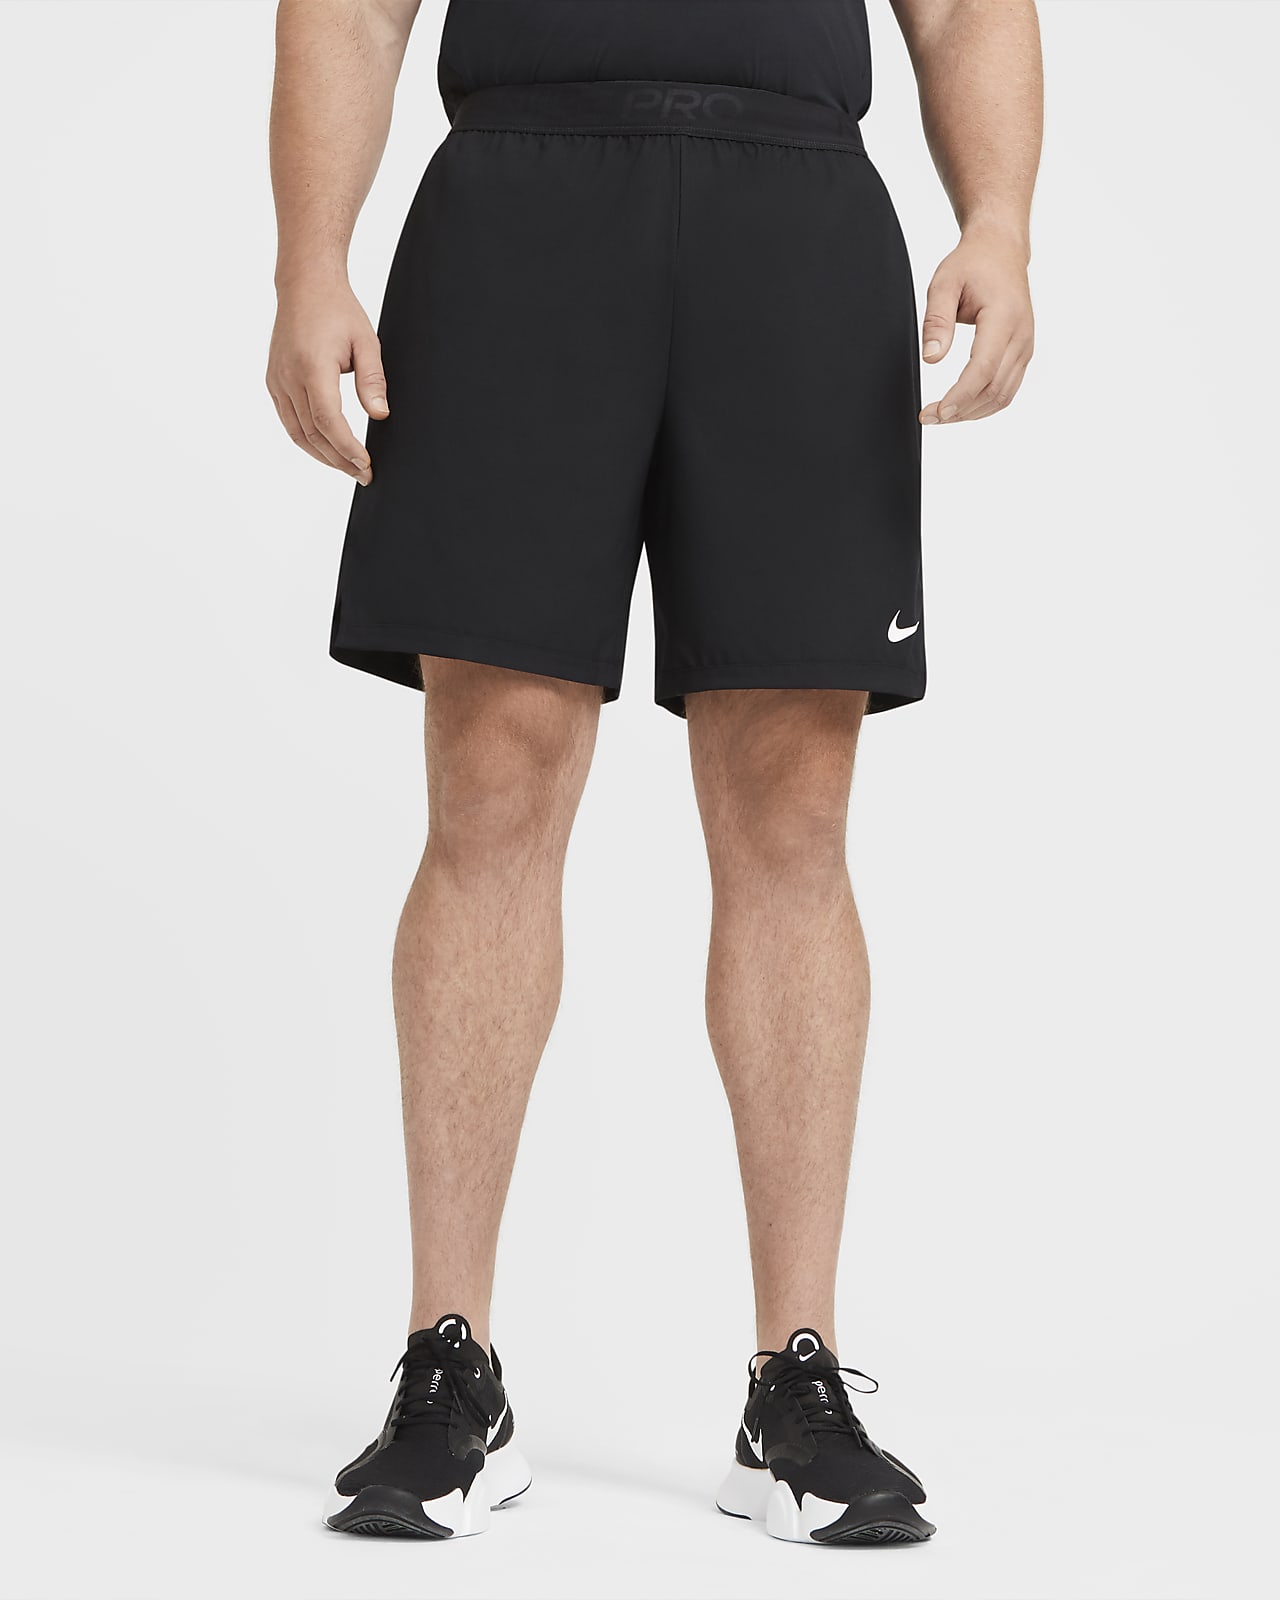 Nike Flex Vent Max Men's Winterized Fleece Fitness Trousers. Nike LU